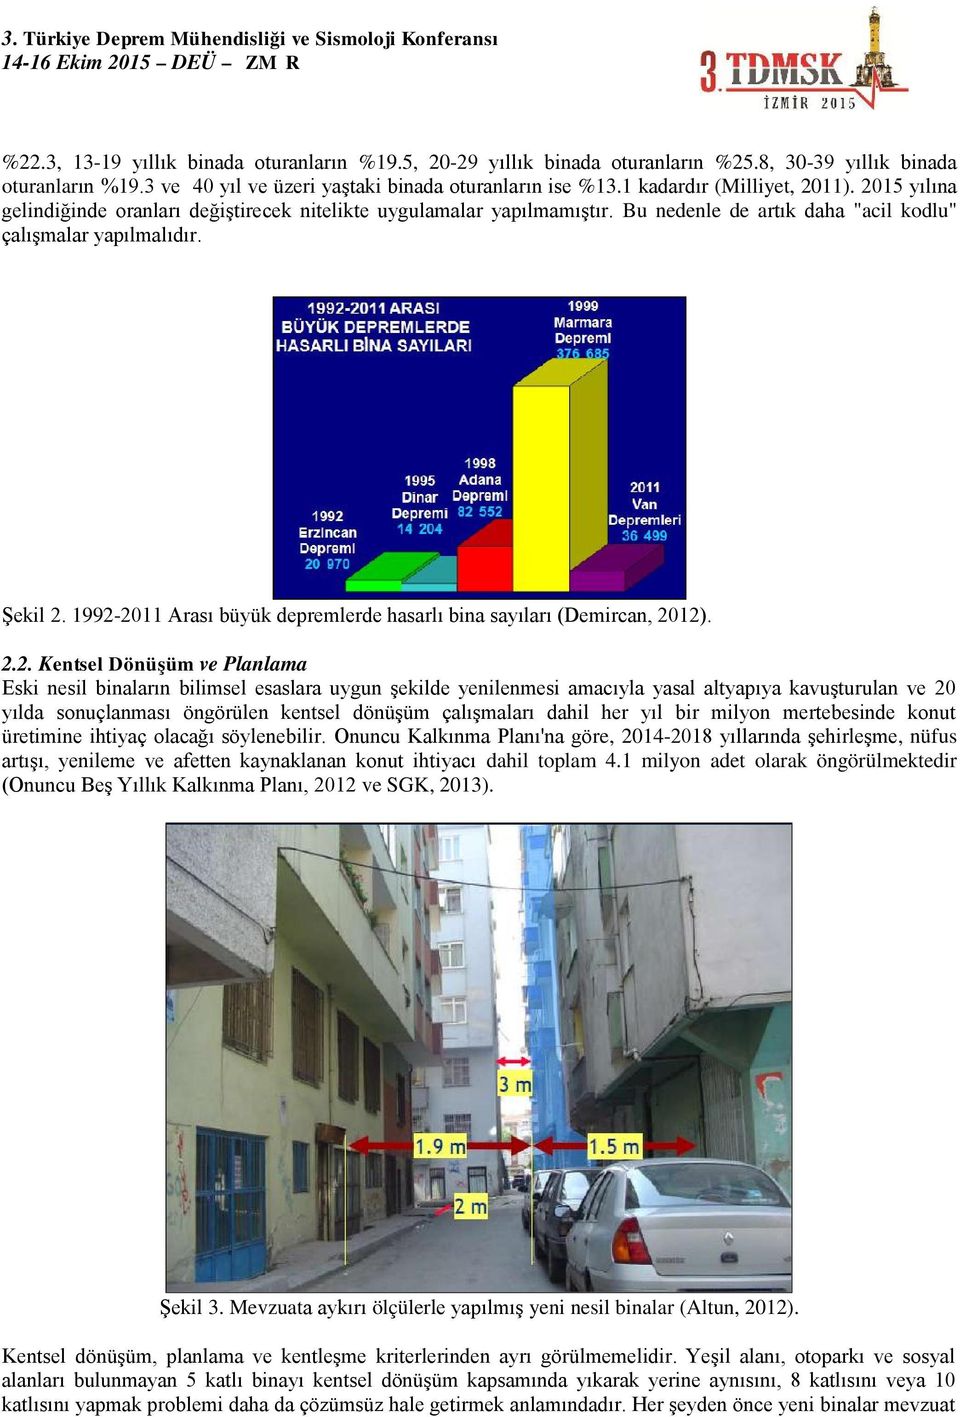 1992-2011 Arası büyük depremlerde hasarlı bina sayıları (Demircan, 2012). 2.2. Kentsel Dönüşüm ve Planlama Eski nesil binaların bilimsel esaslara uygun şekilde yenilenmesi amacıyla yasal altyapıya